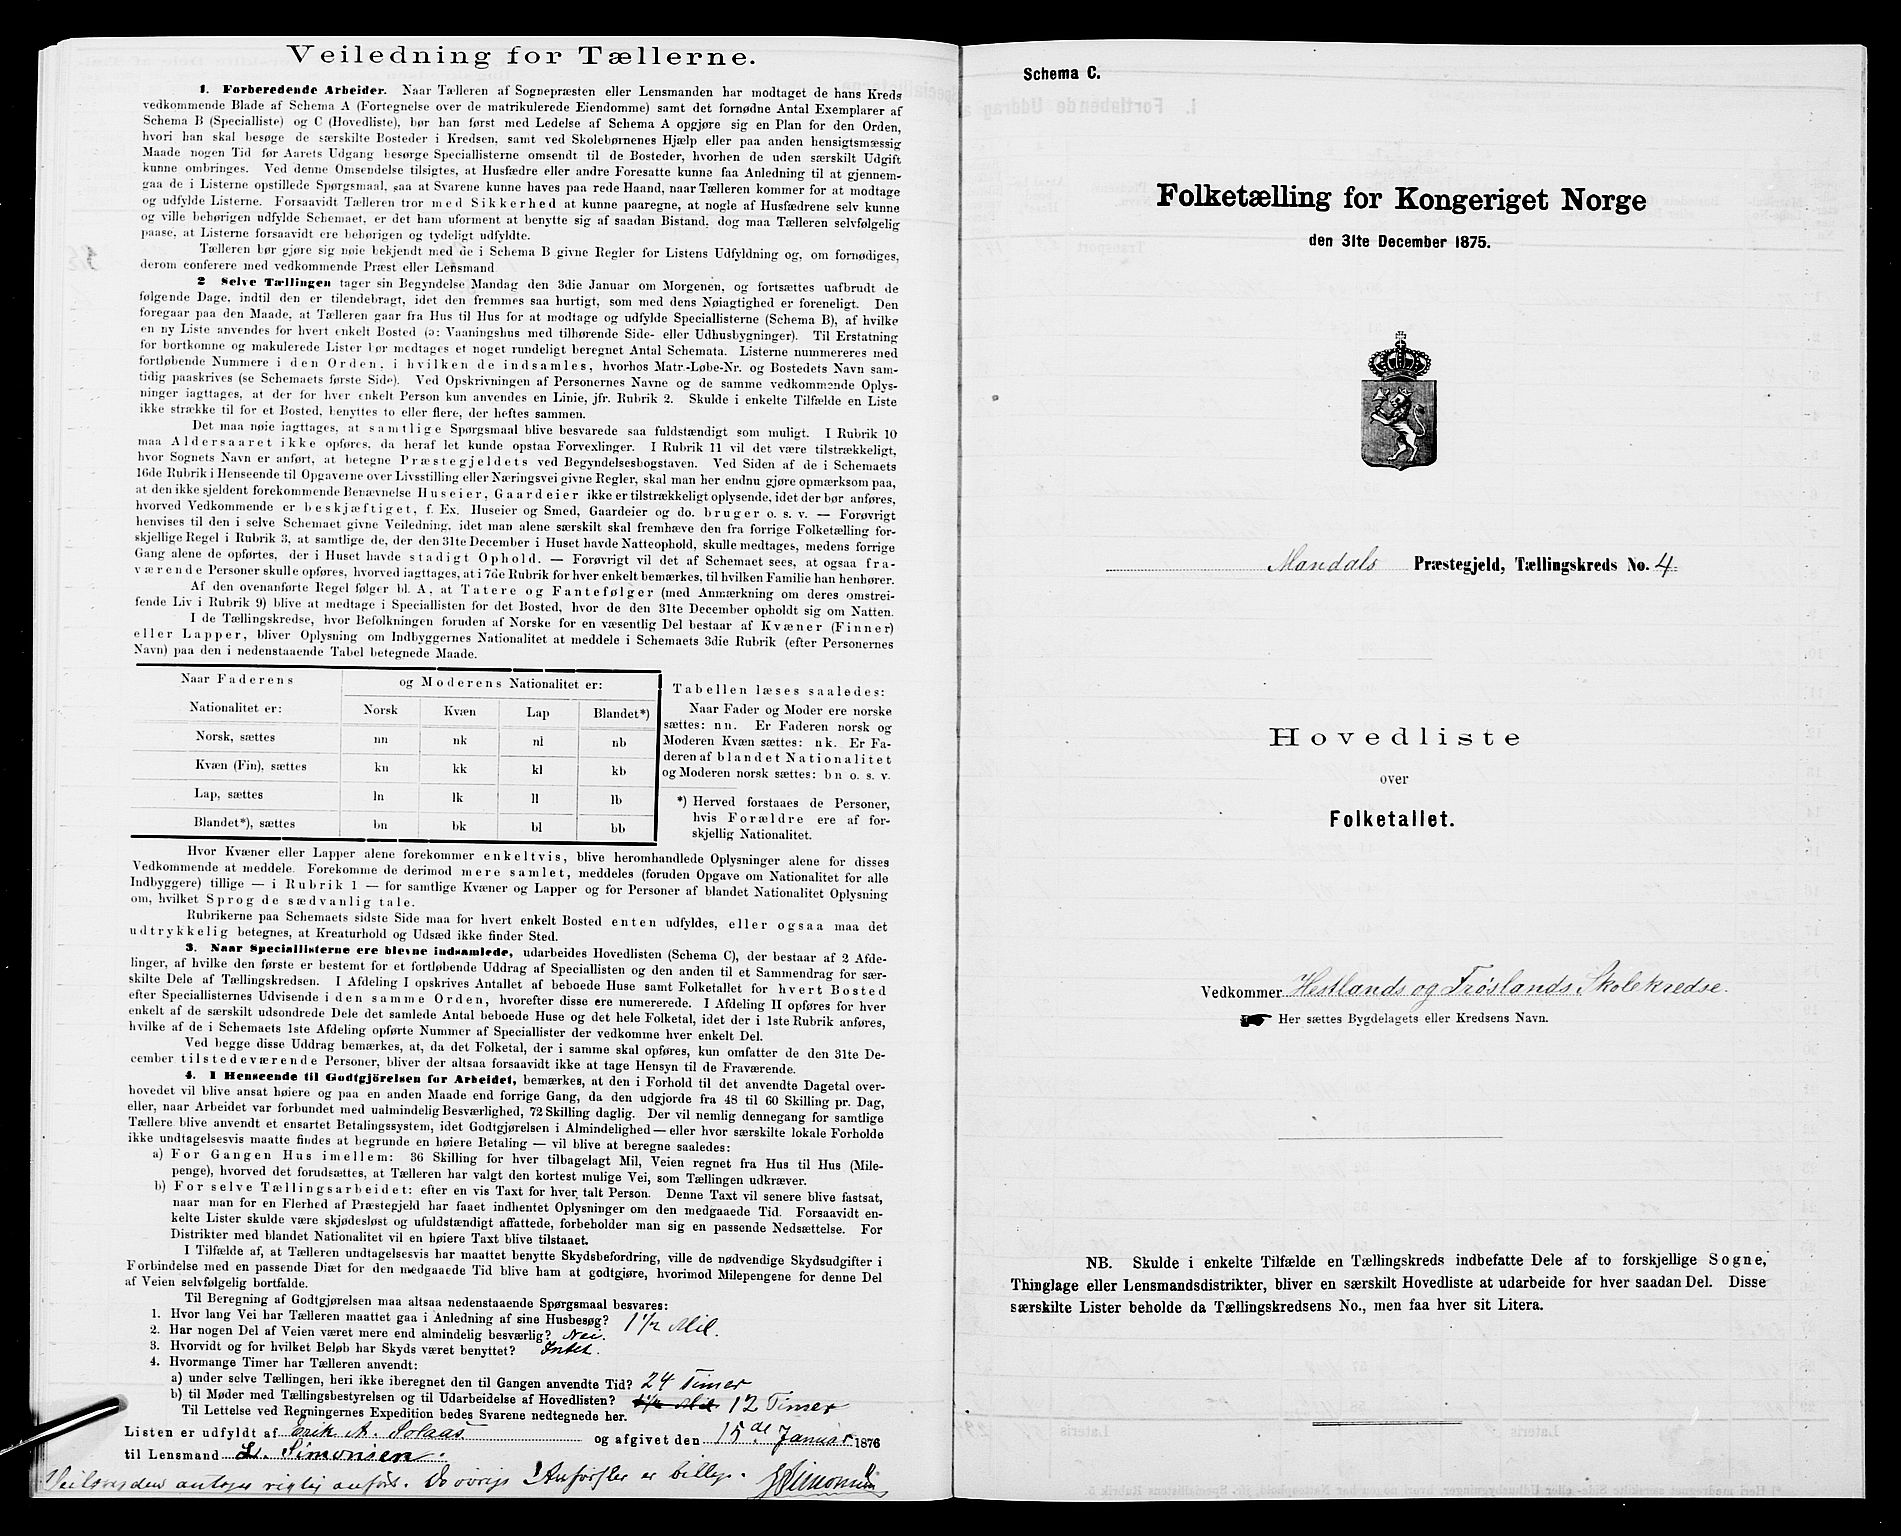 SAK, Folketelling 1875 for 1019L Mandal prestegjeld, Halse sokn og Harkmark sokn, 1875, s. 35